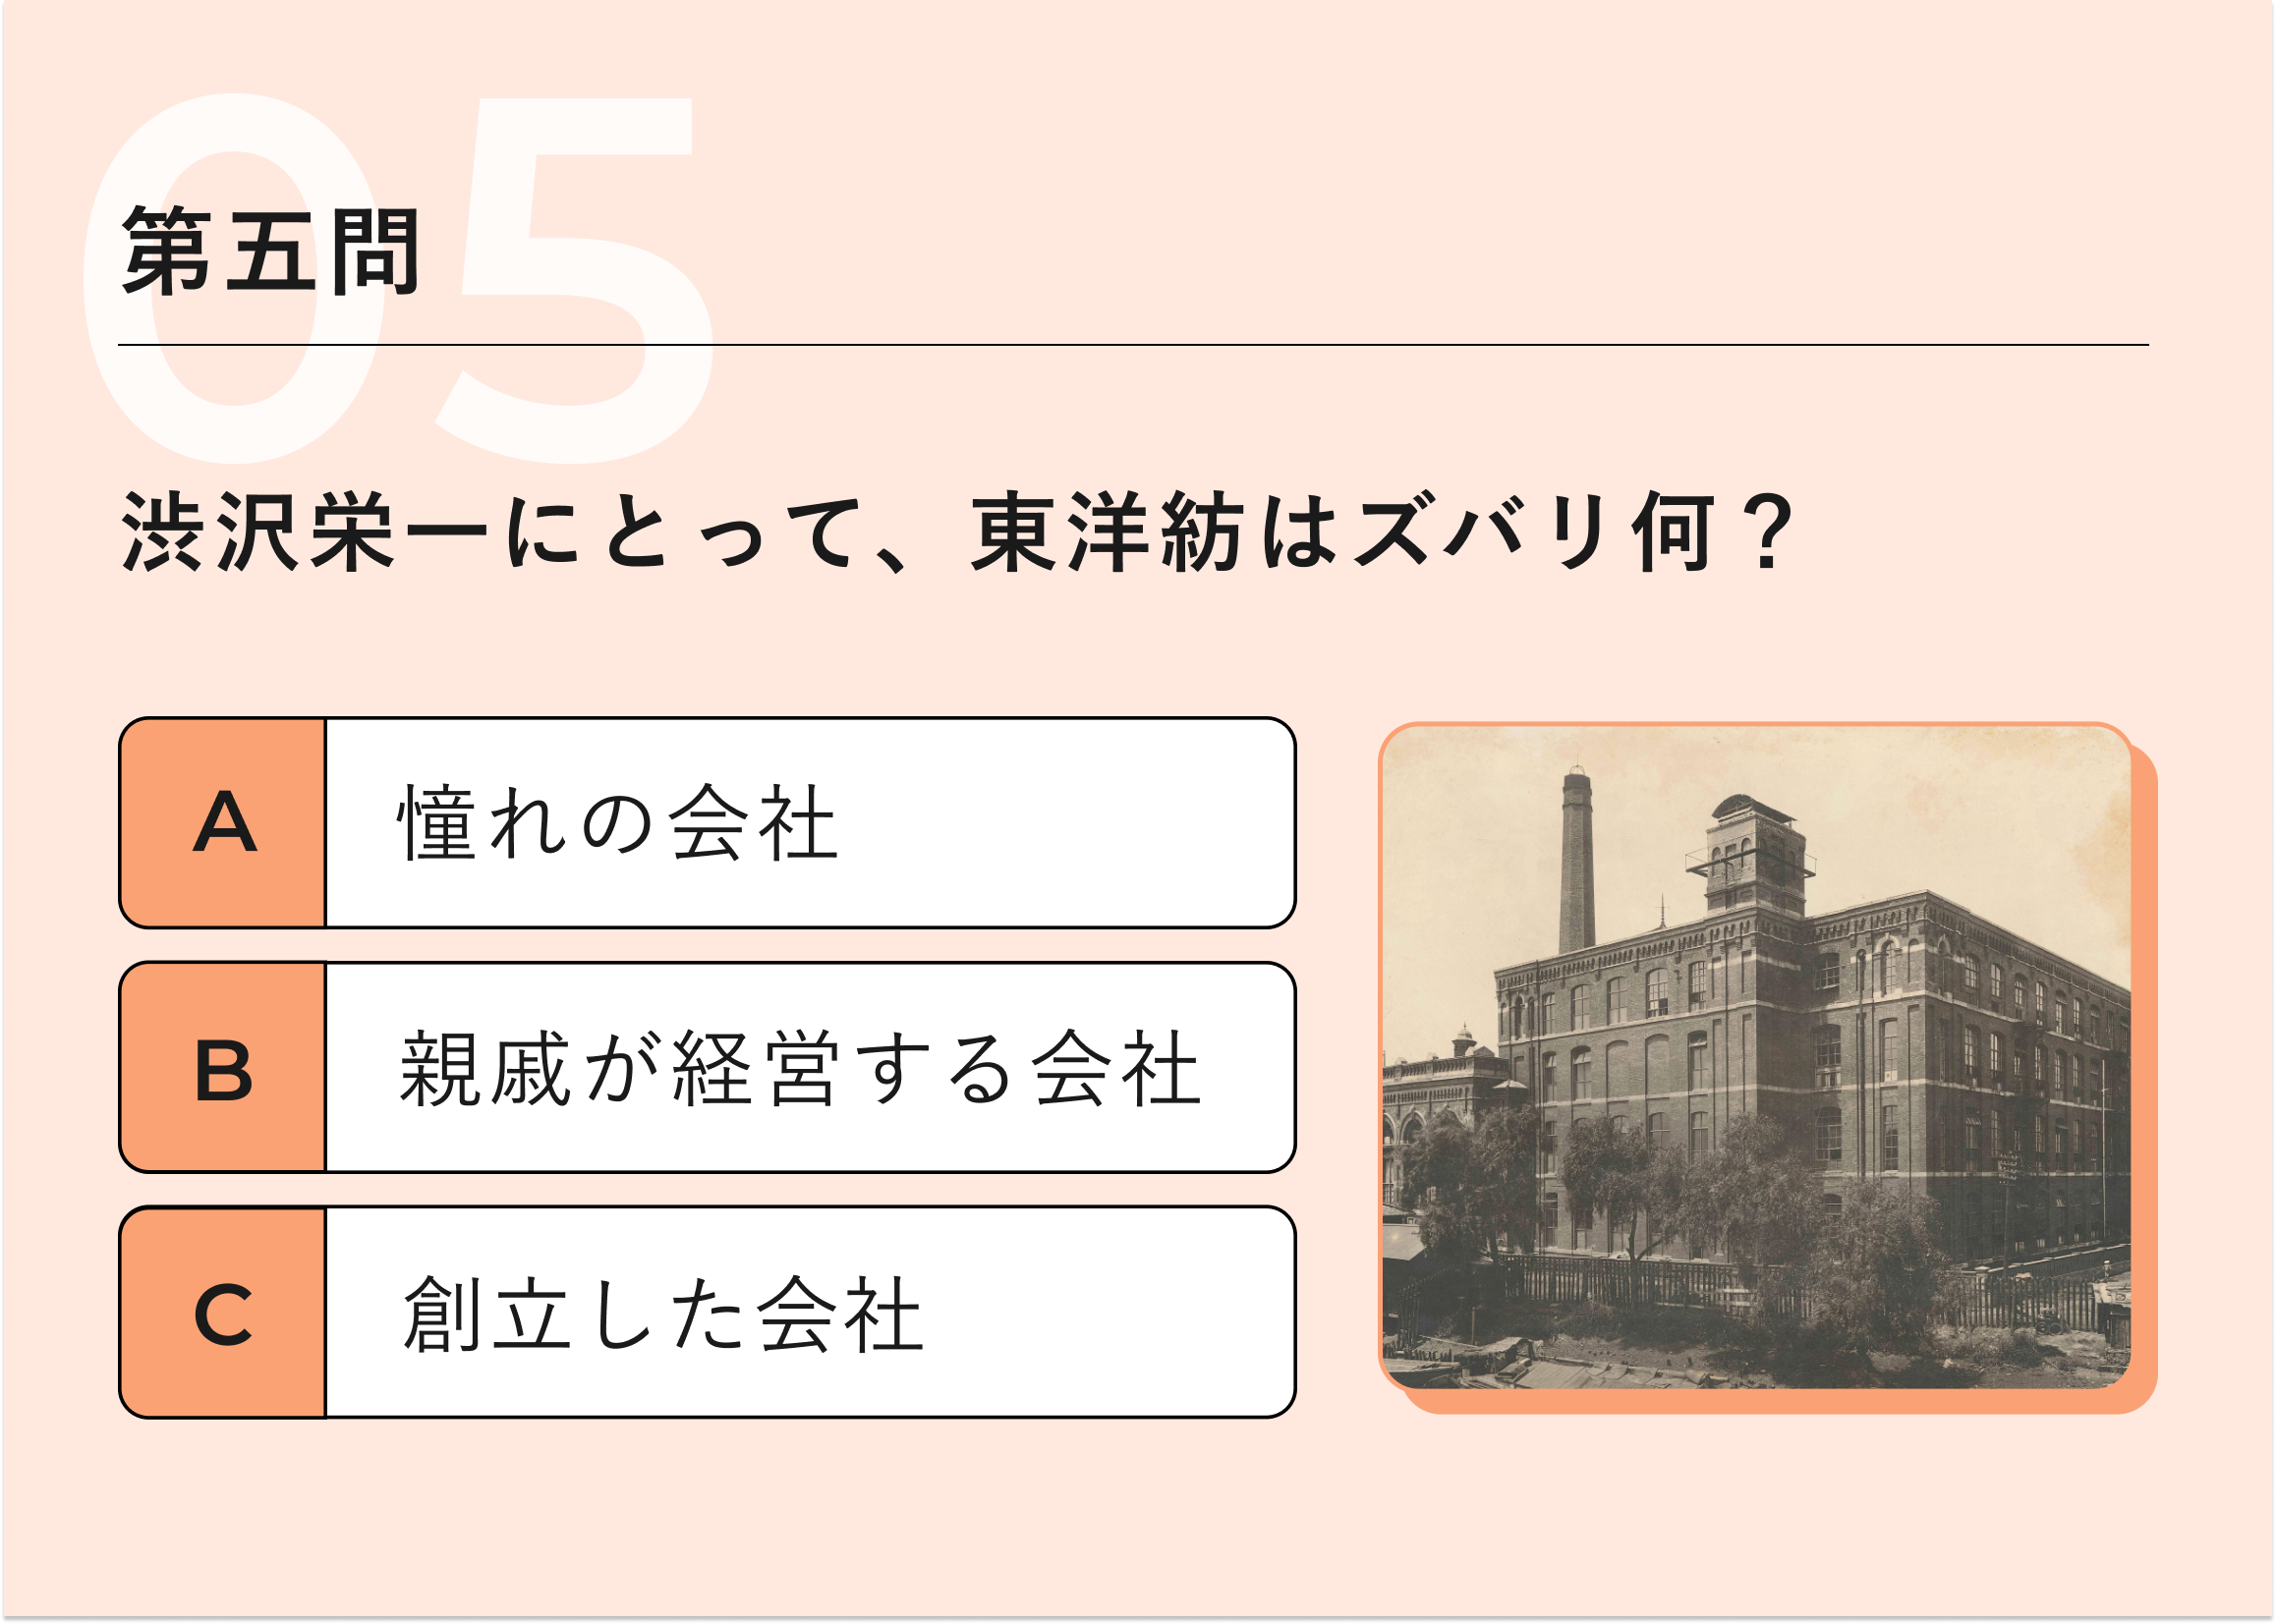 第五問：渋沢栄一にとって、 東洋紡はズバリ何?　A憧れの会社　B親戚が経営する会社　C創立した会社